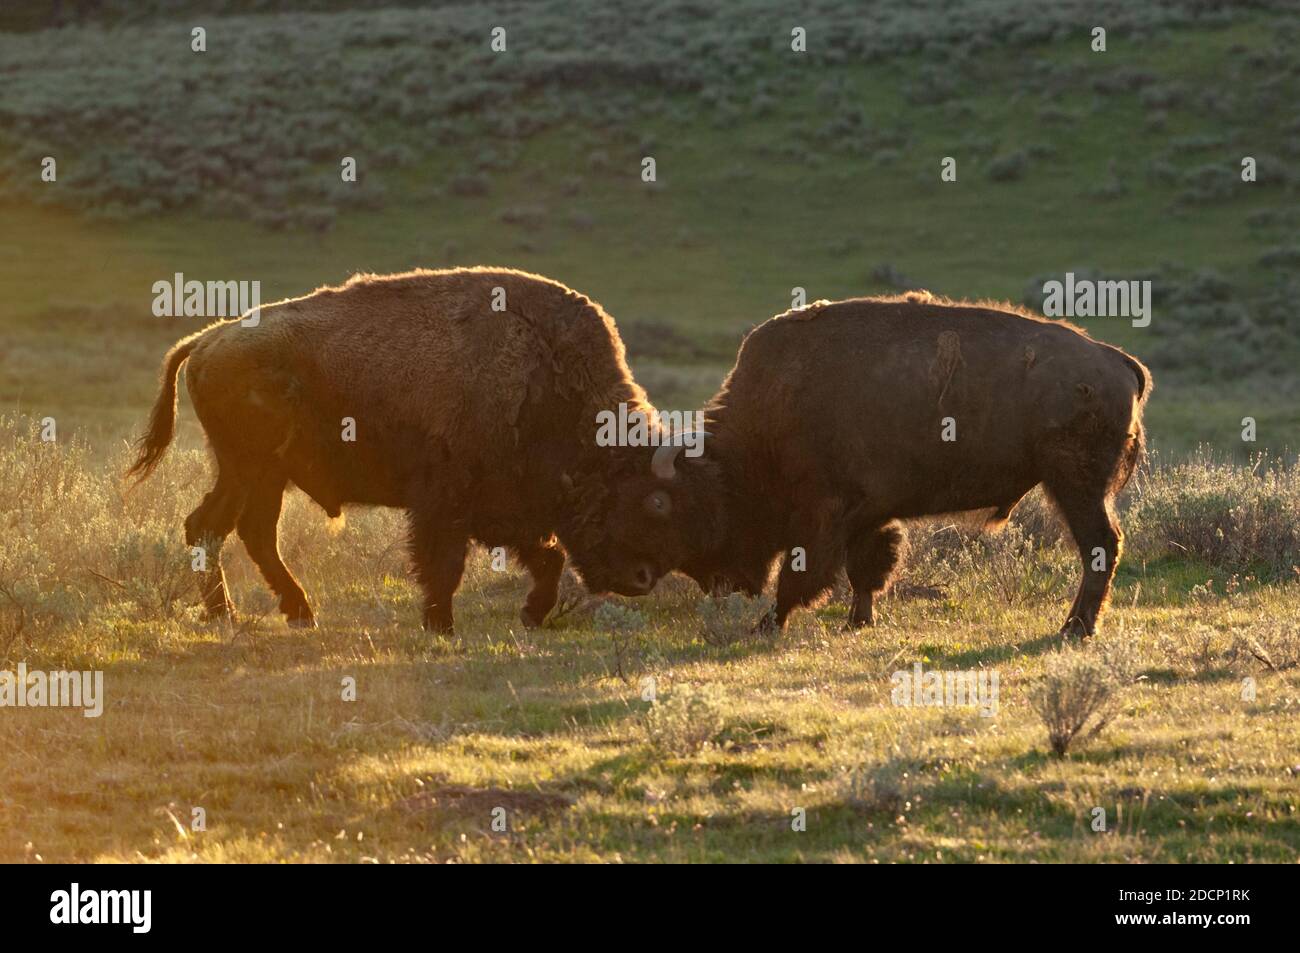 Buffalo americano (bisonte di bisonte). Parco nazionale di Yellowstone, Wyoming, Stati Uniti. I tori di bufalo sparano al tramonto. Foto Stock